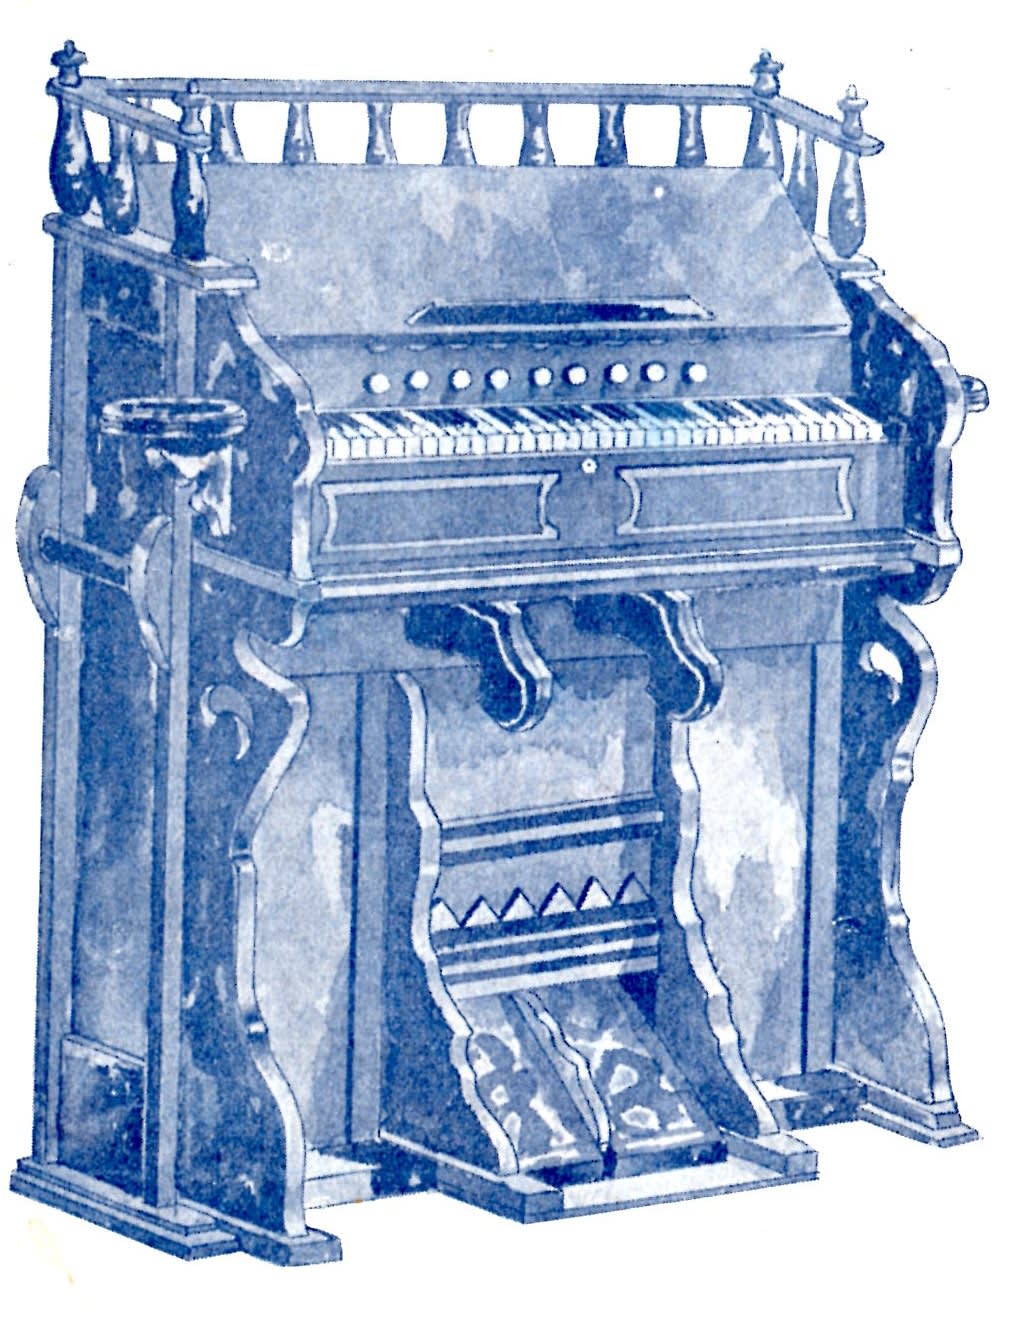 東洋社風琴広告」「東洋社楽器目録」（1902） - 蔵書目録